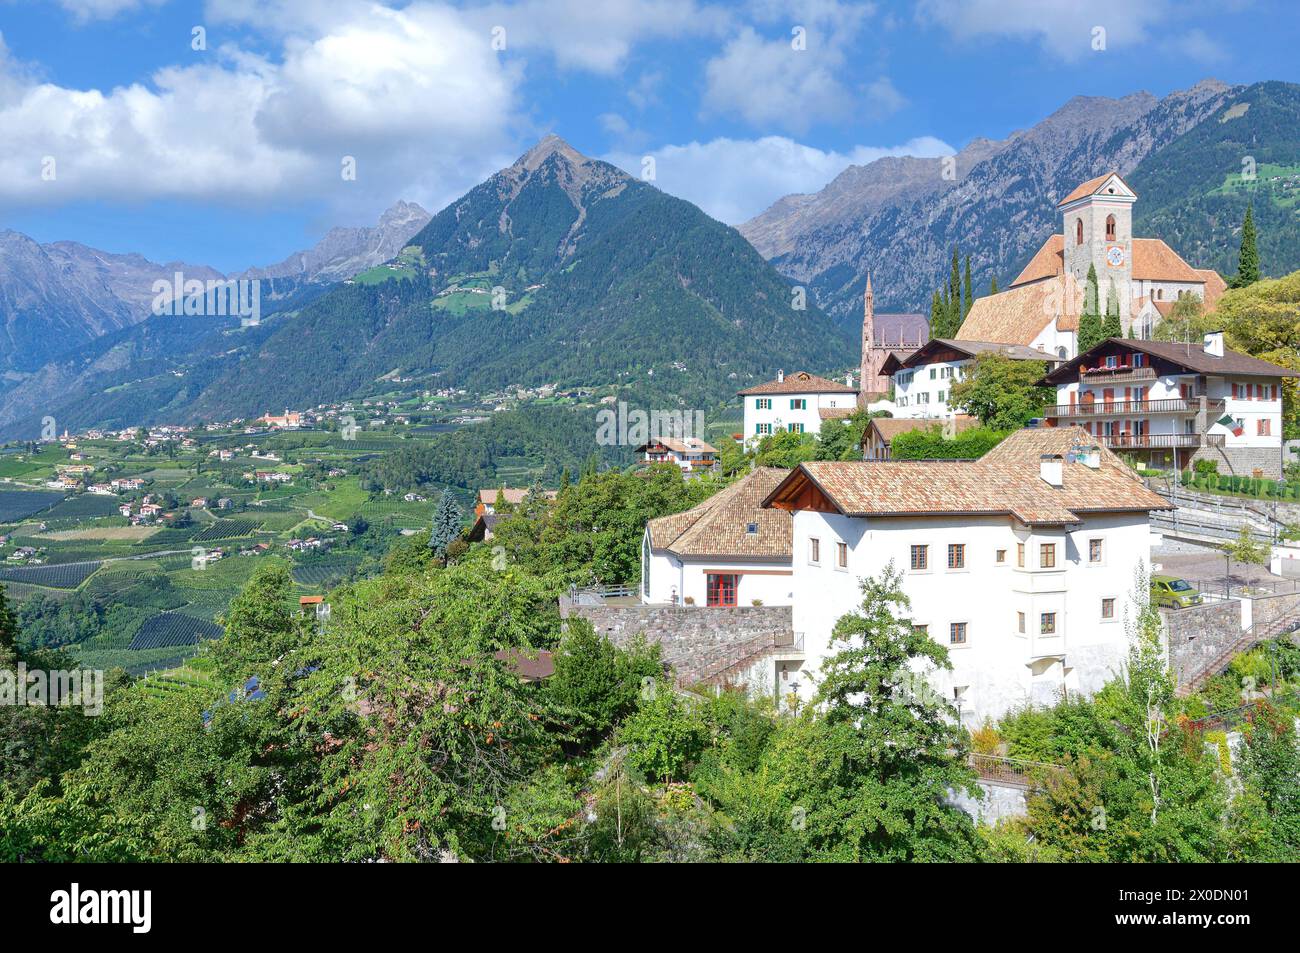 Scena in alto Adige vicino a Merano, Trentino, Italia Foto Stock